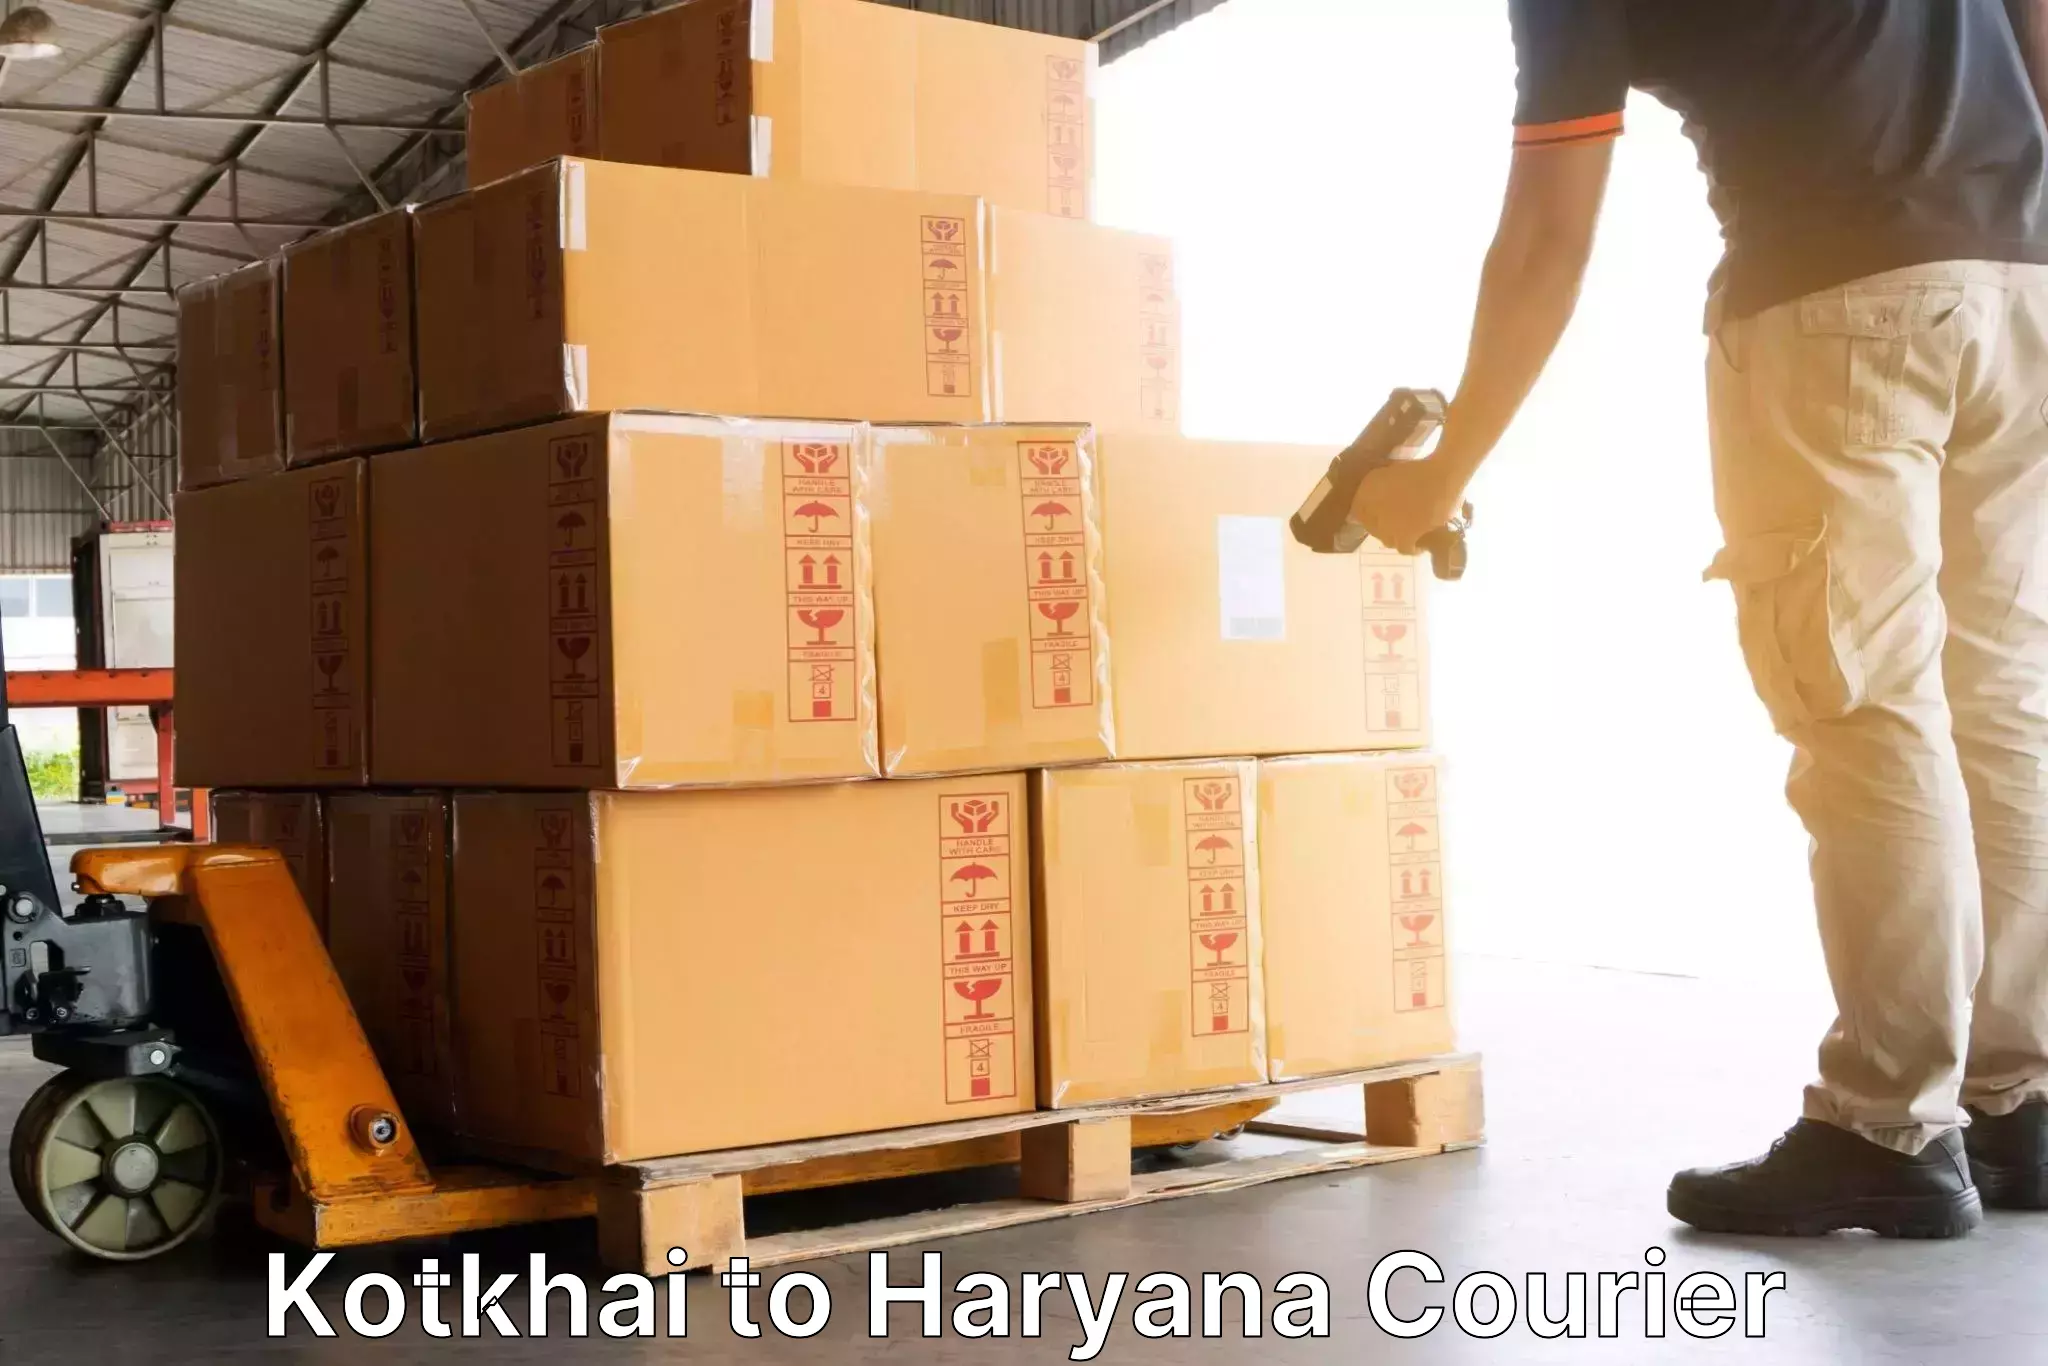 Efficient freight service Kotkhai to Shahabad Markanda